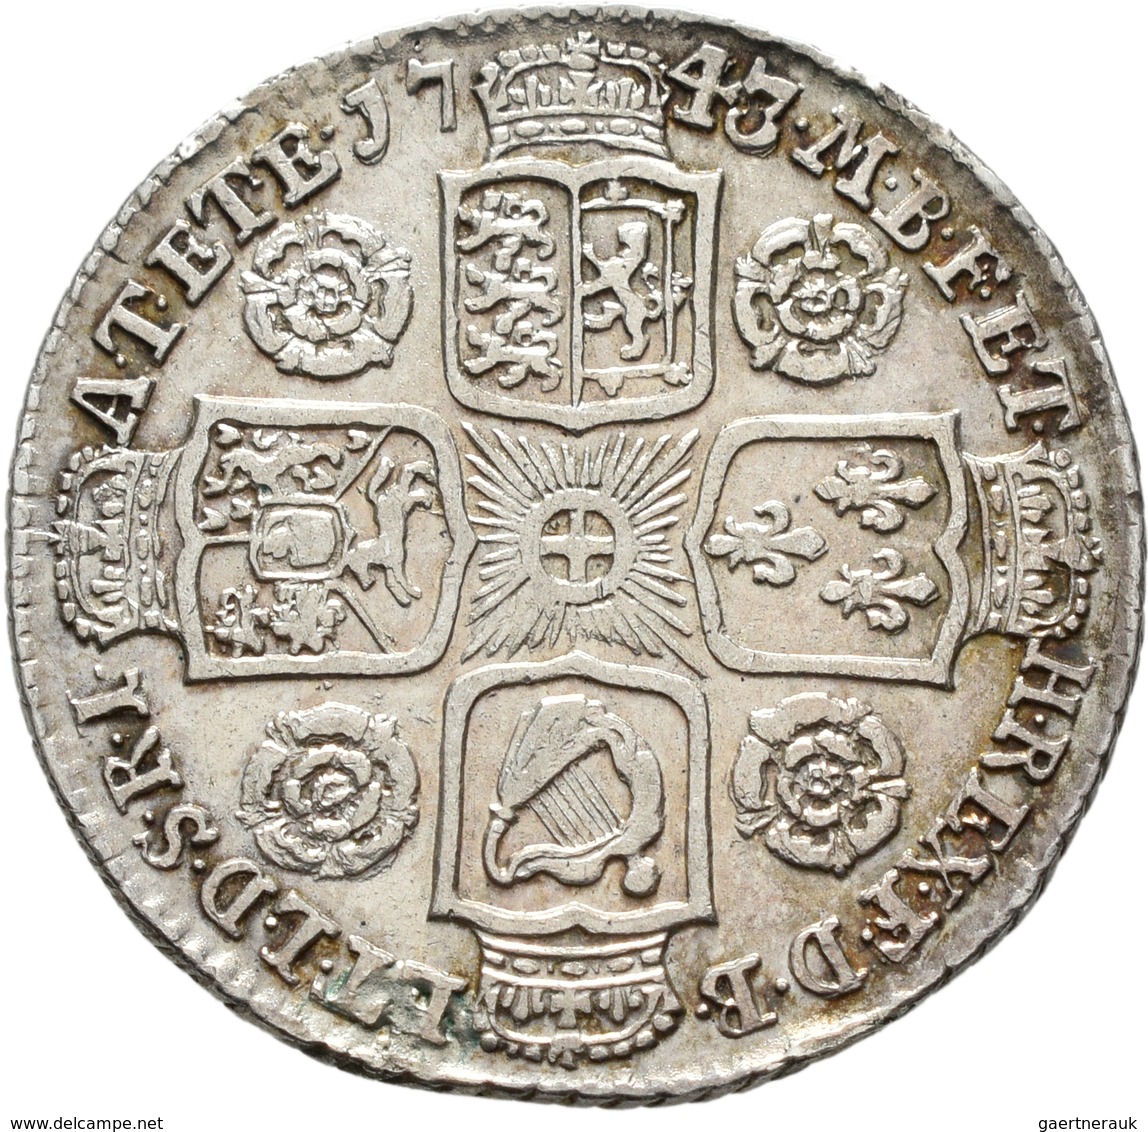 Großbritannien: Georg II. 1727-1760: Lot 4 Stück; Shilling 1737, 1743, 1745, 1750, sehr schön, sehr